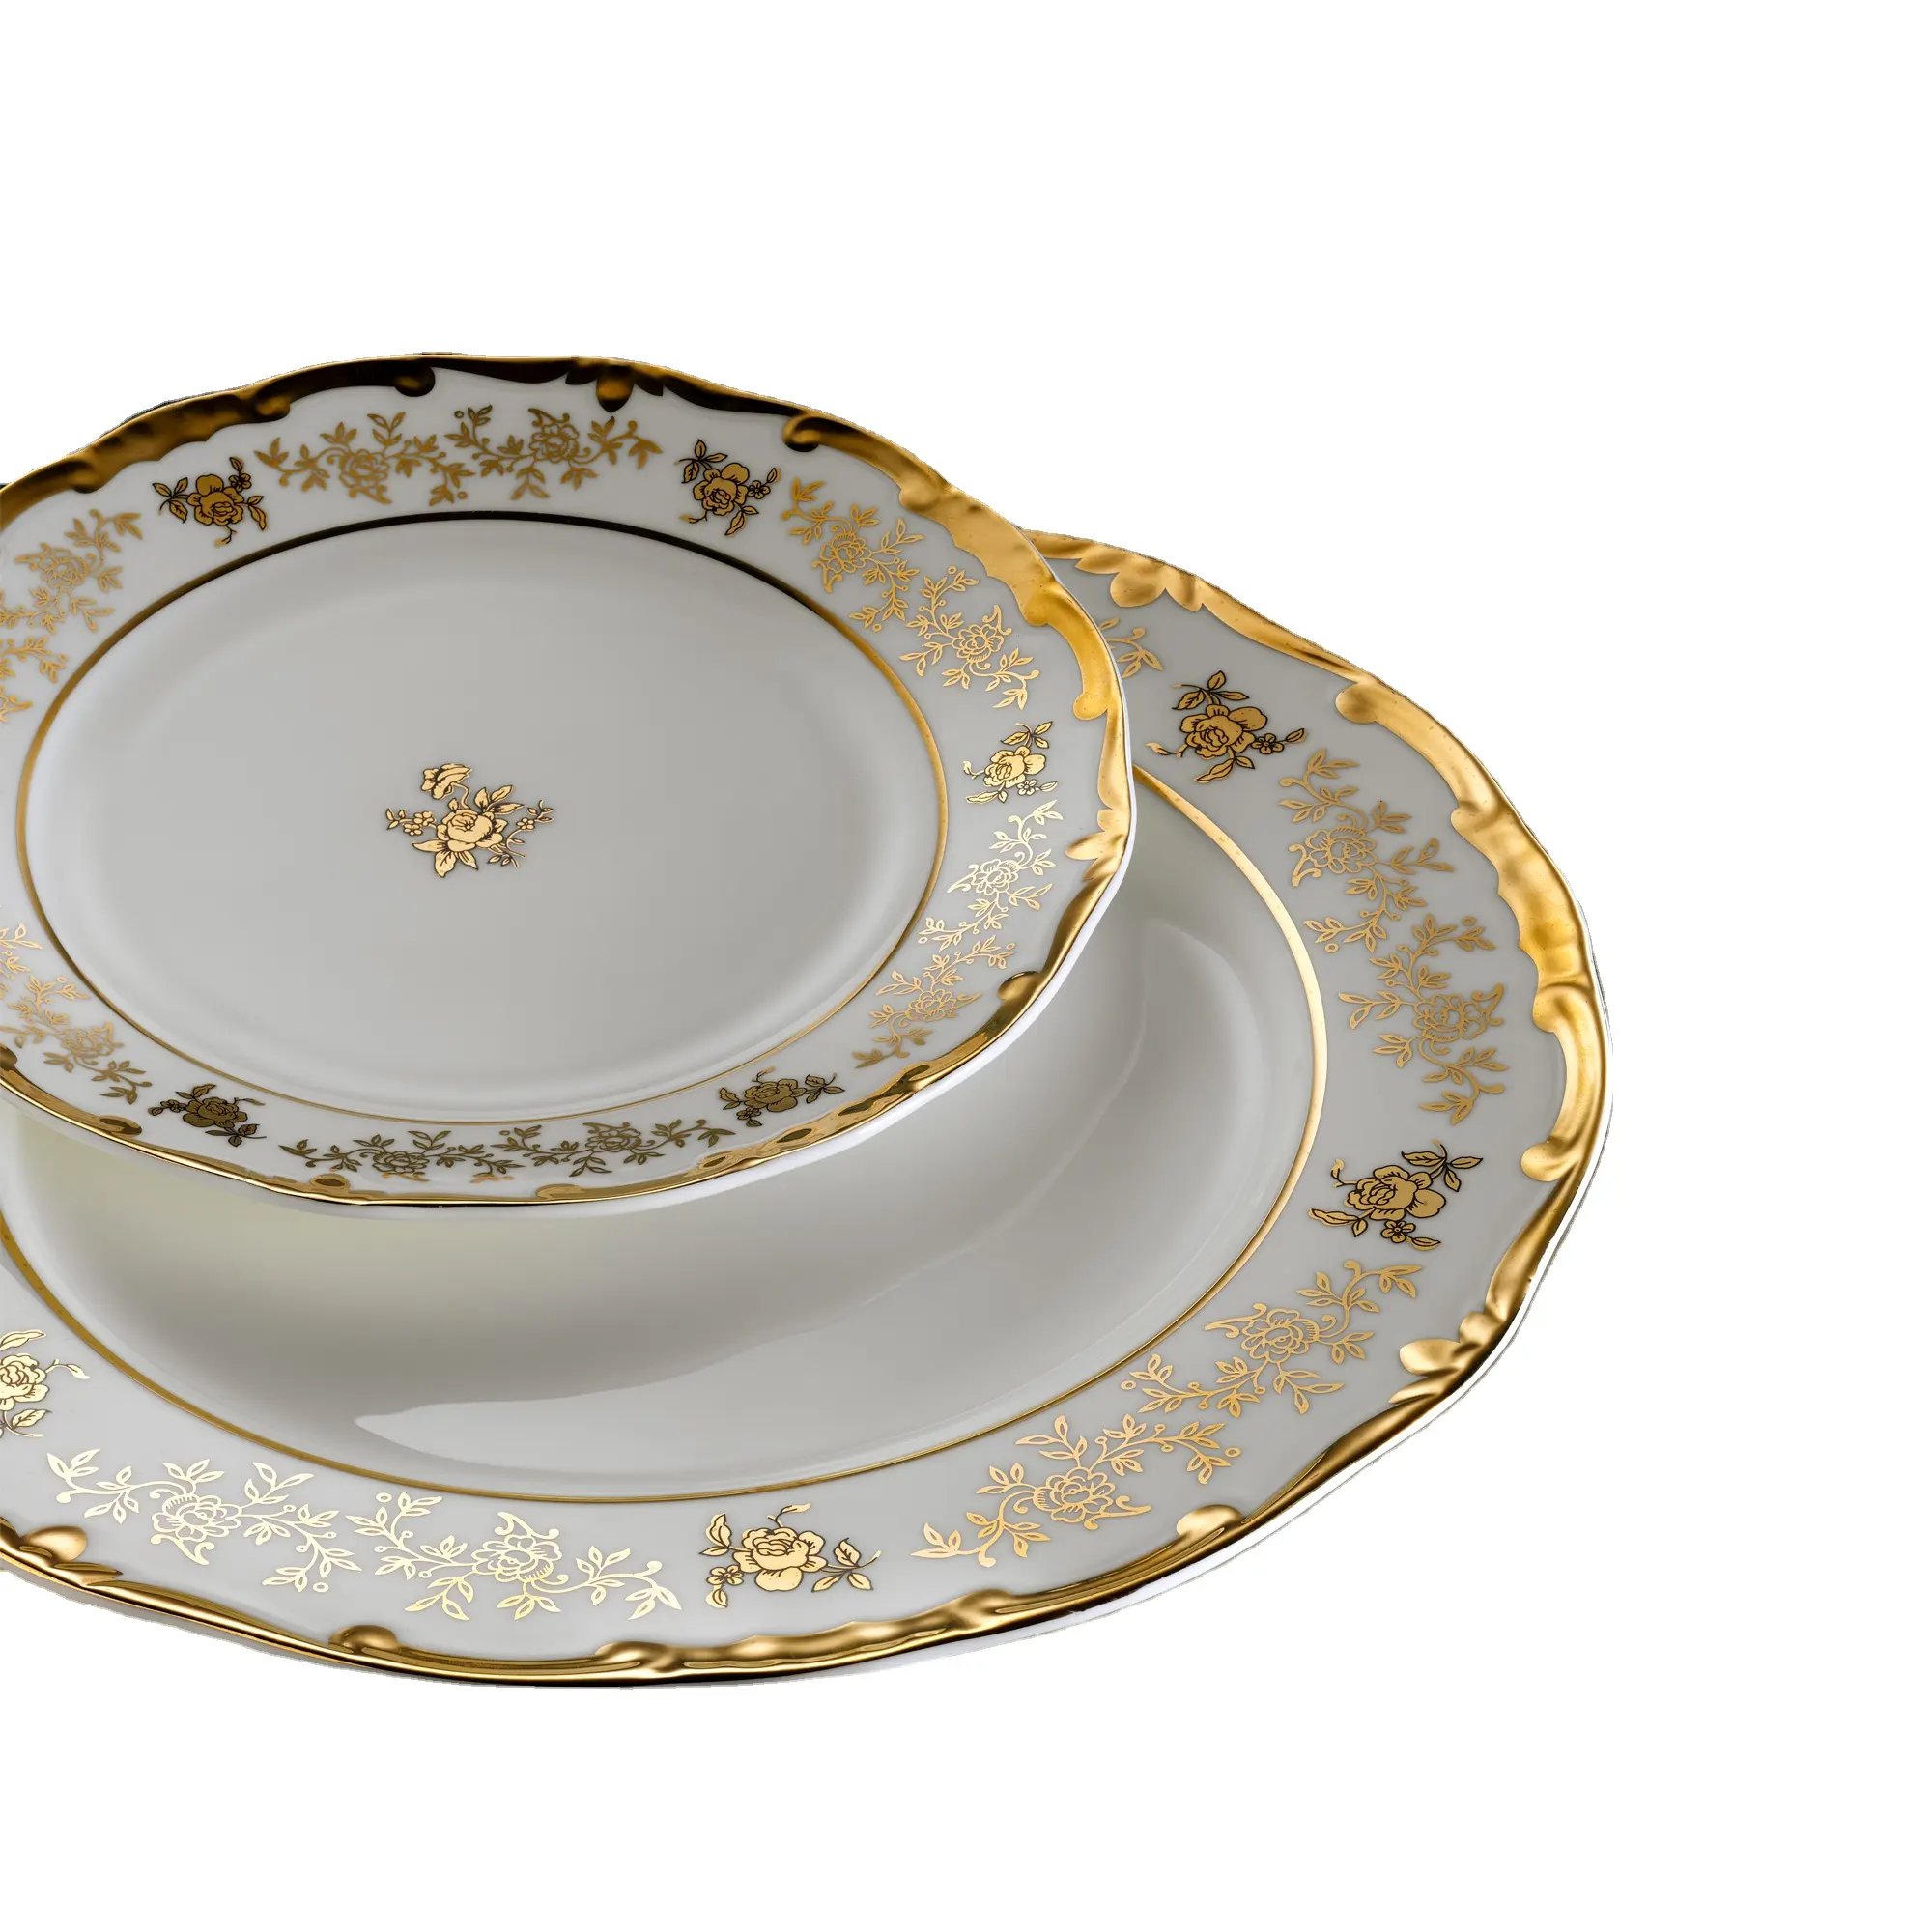 Oro rilievo da tavola a buon mercato all'ingrosso bone china ware stoviglie cena set da tavola la cena servizio di piatti set di stoviglie se